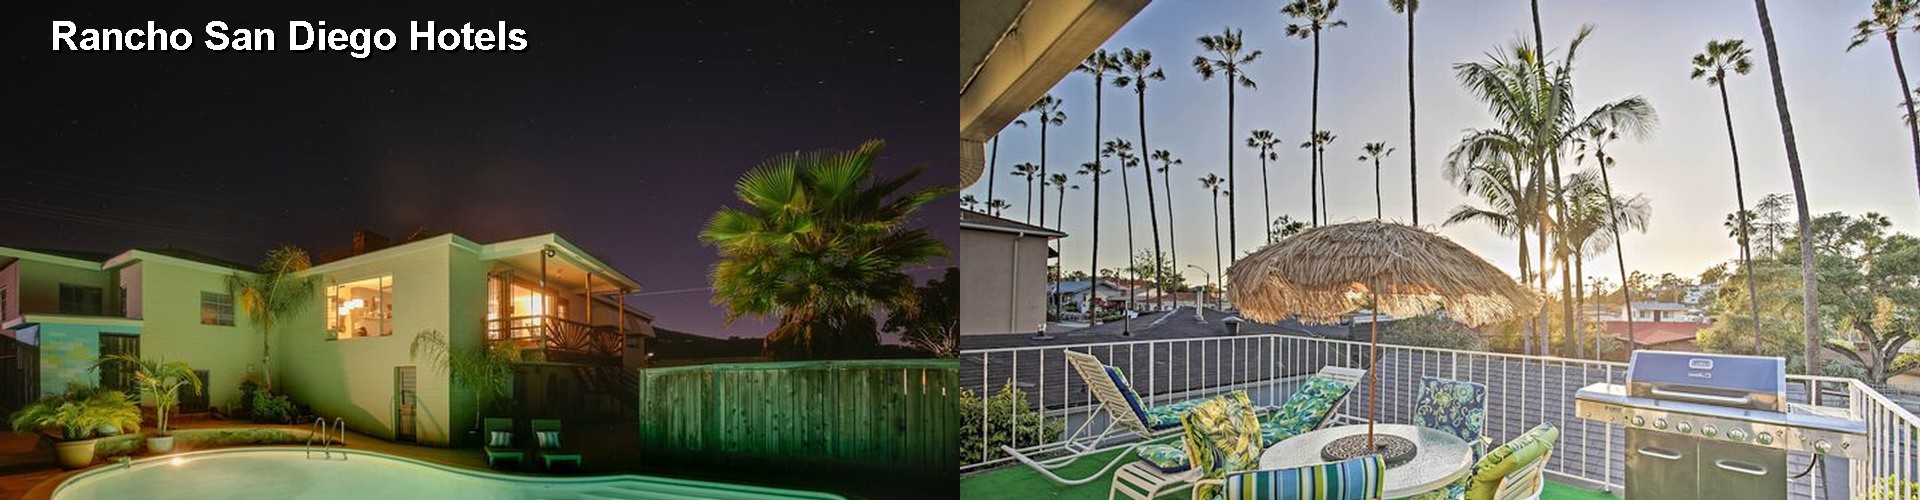 4 Best Hotels near Rancho San Diego